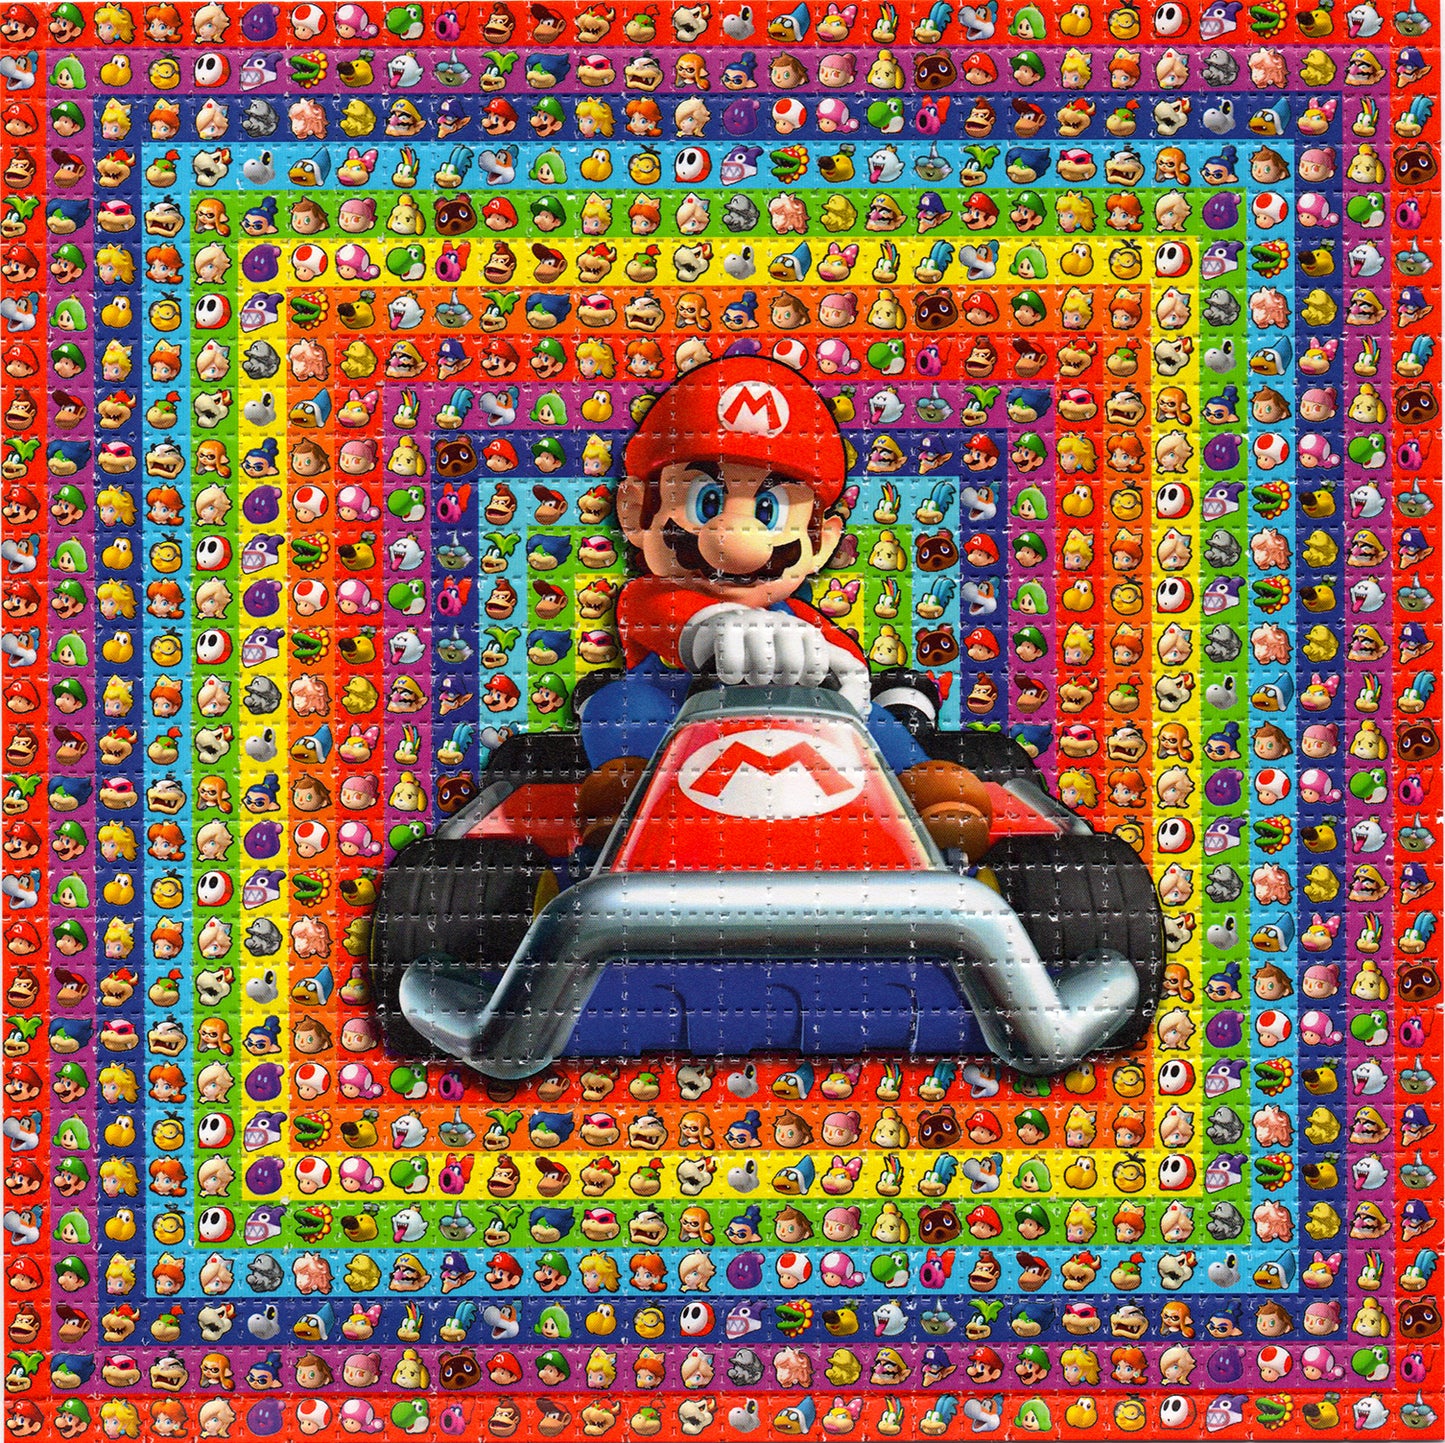 Go Karts Go LSD blotter art print